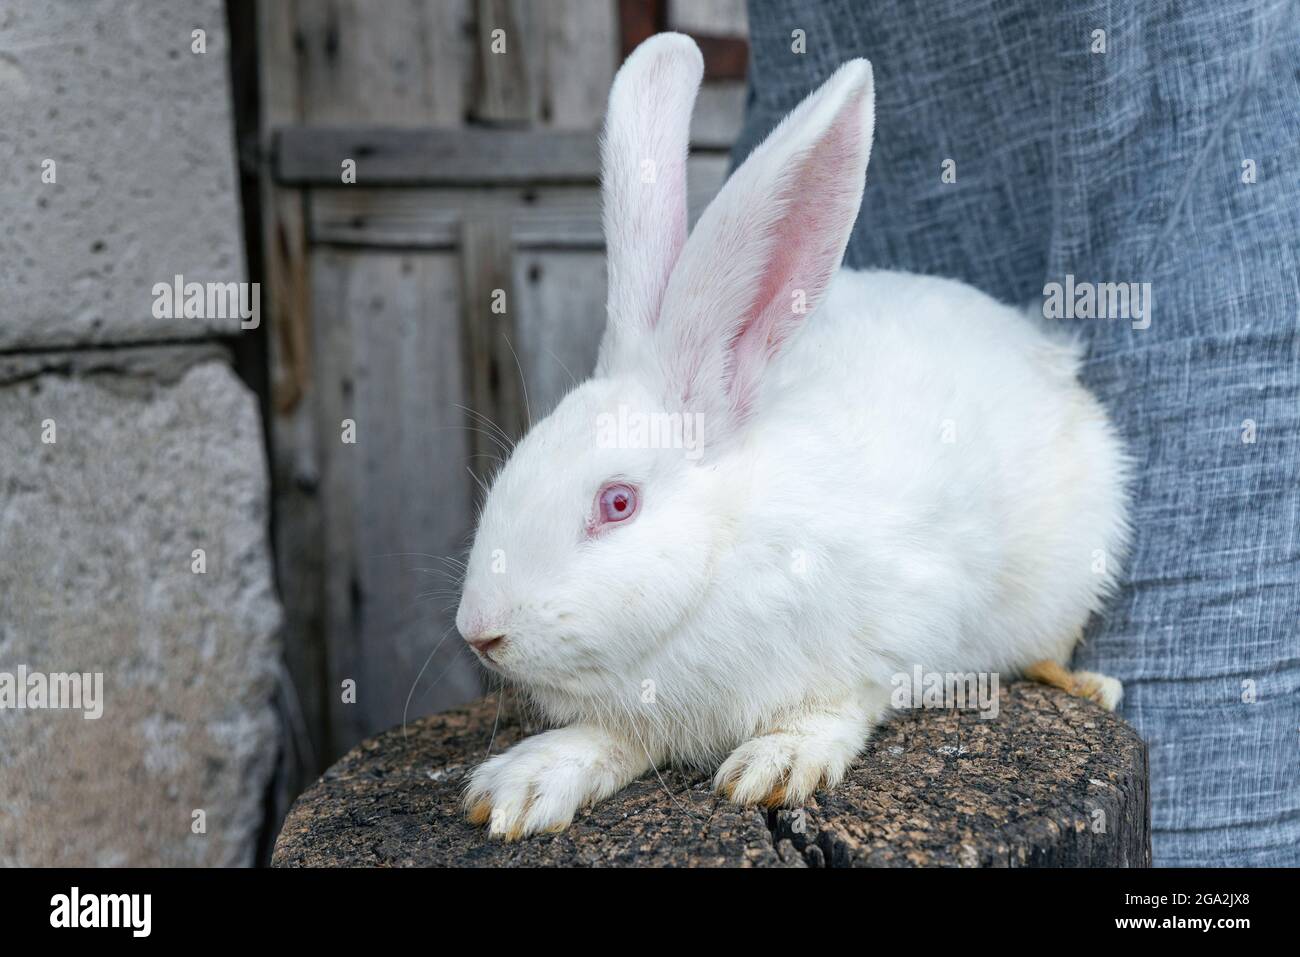 Reinrassiger Albino-Hase. Großes weißes Kaninchen mit roten Augen  Stockfotografie - Alamy